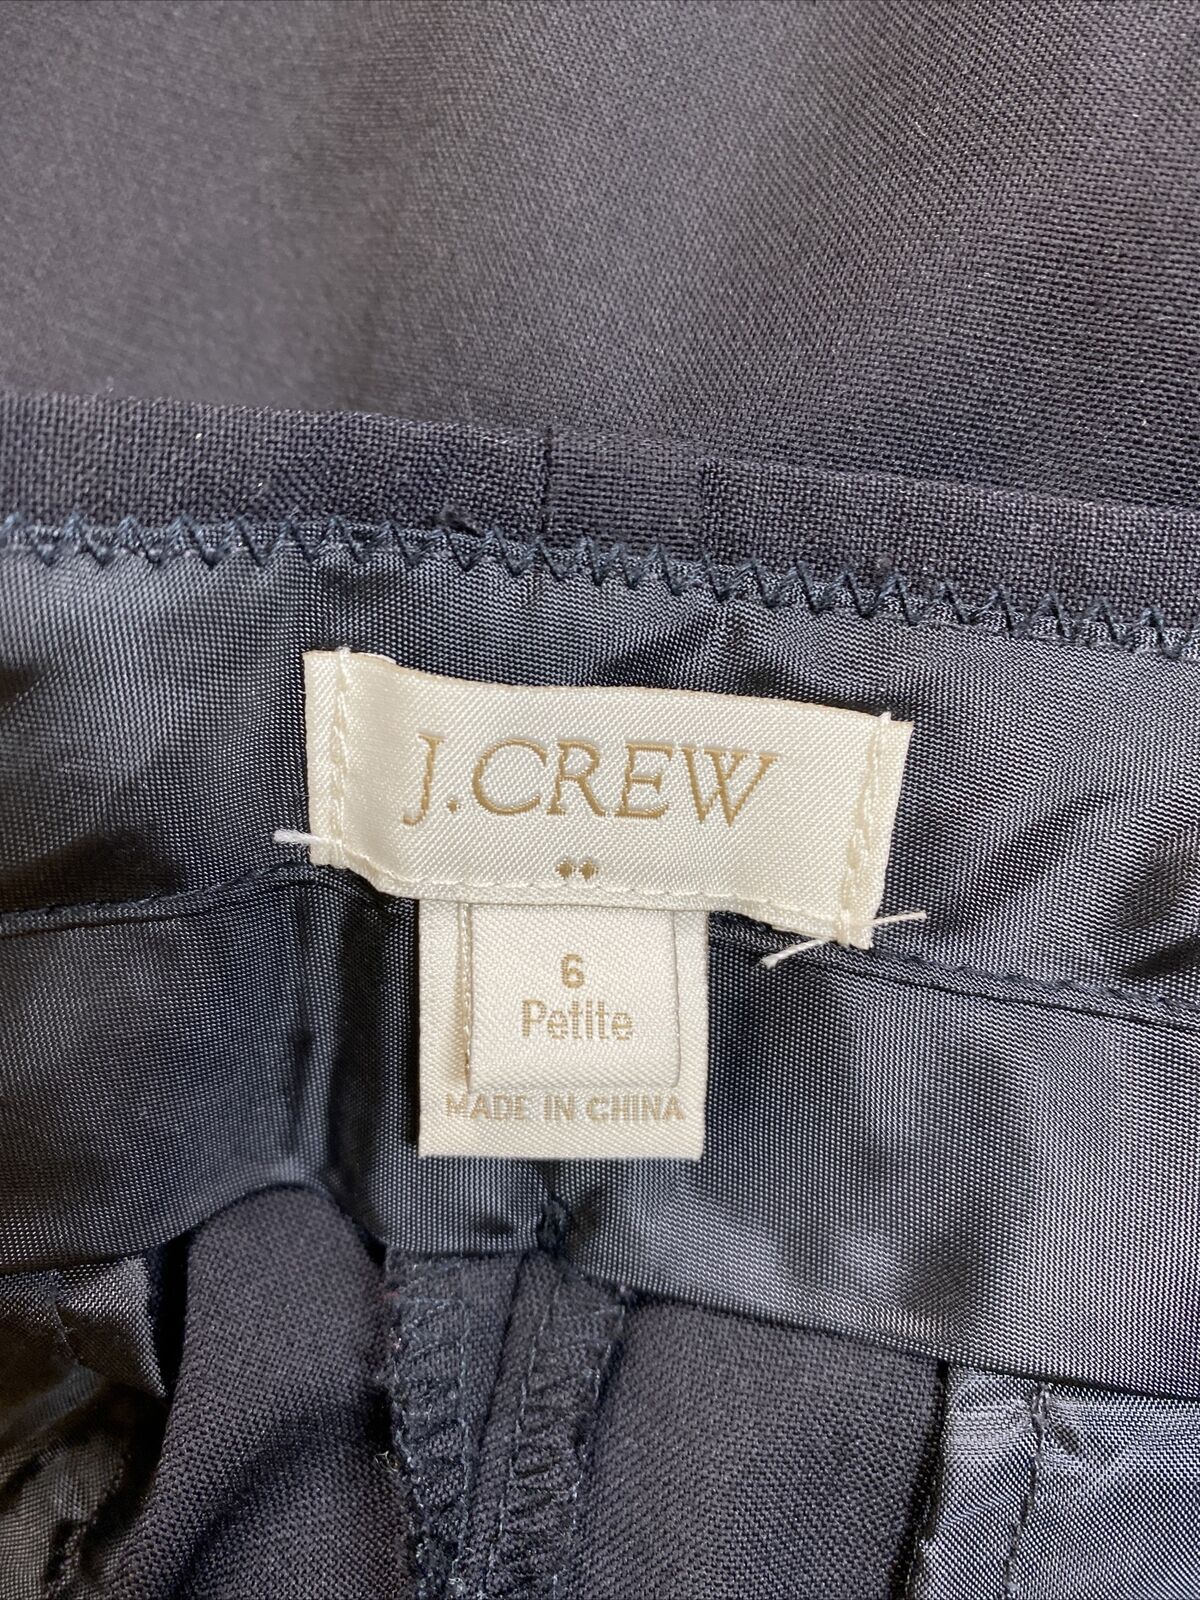 J.Crew Women's Black Wool Bootcut Dress Pants - 6 Petite